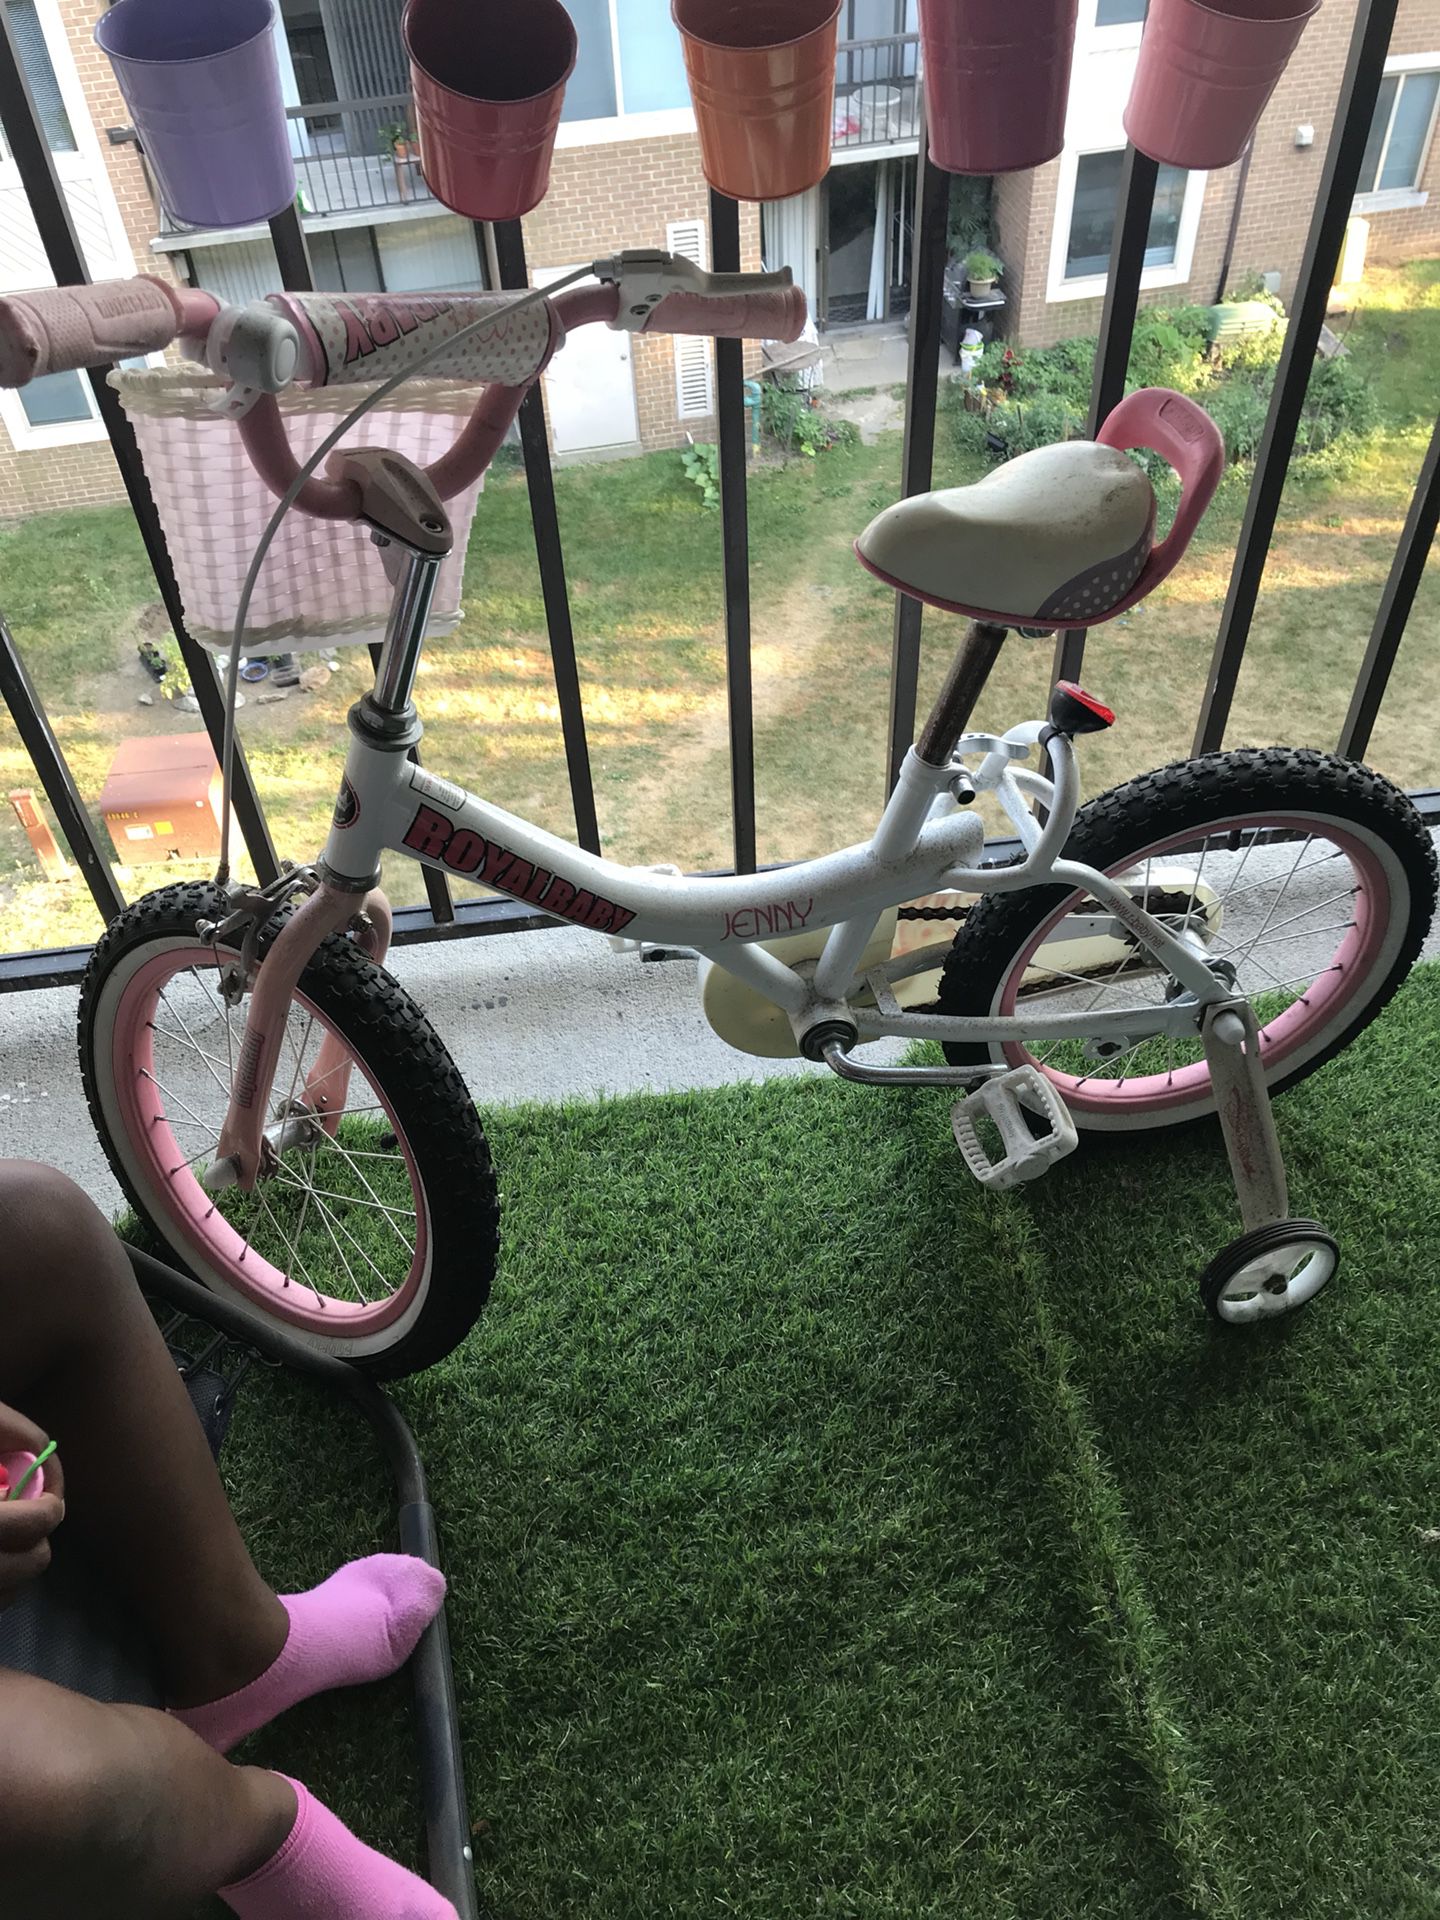 $117 kids bike for $40